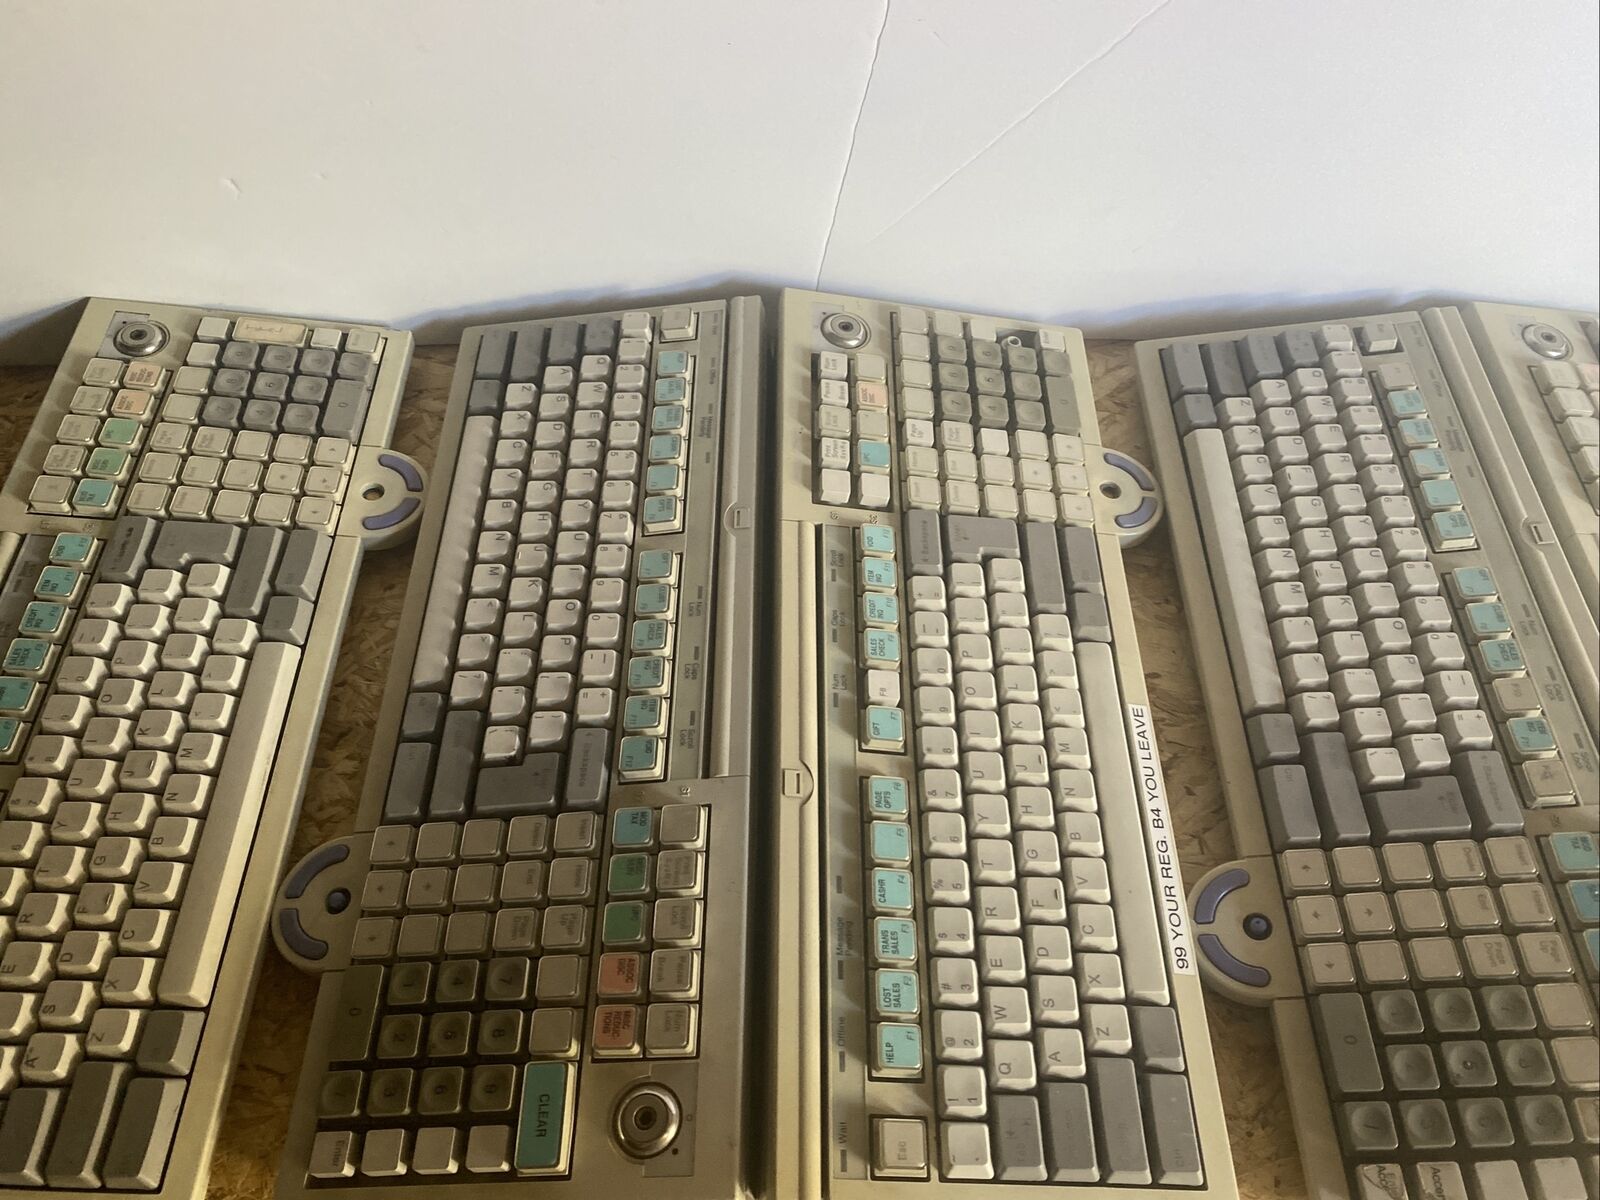 Lot of 8 IBM, NCR 10J0902, Retail Keyboard